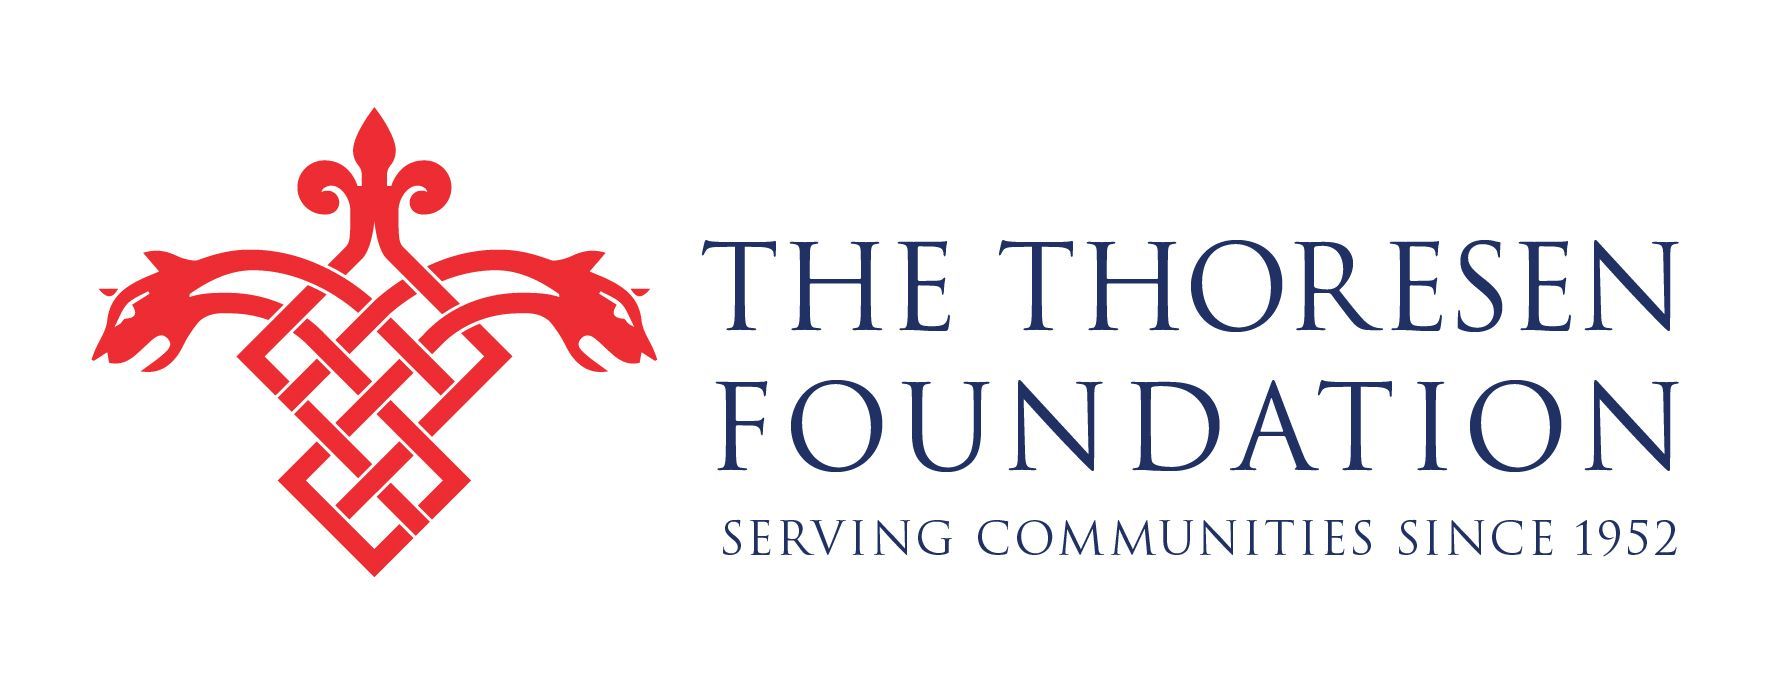 TheThoresenFoundation_horizontal-logo